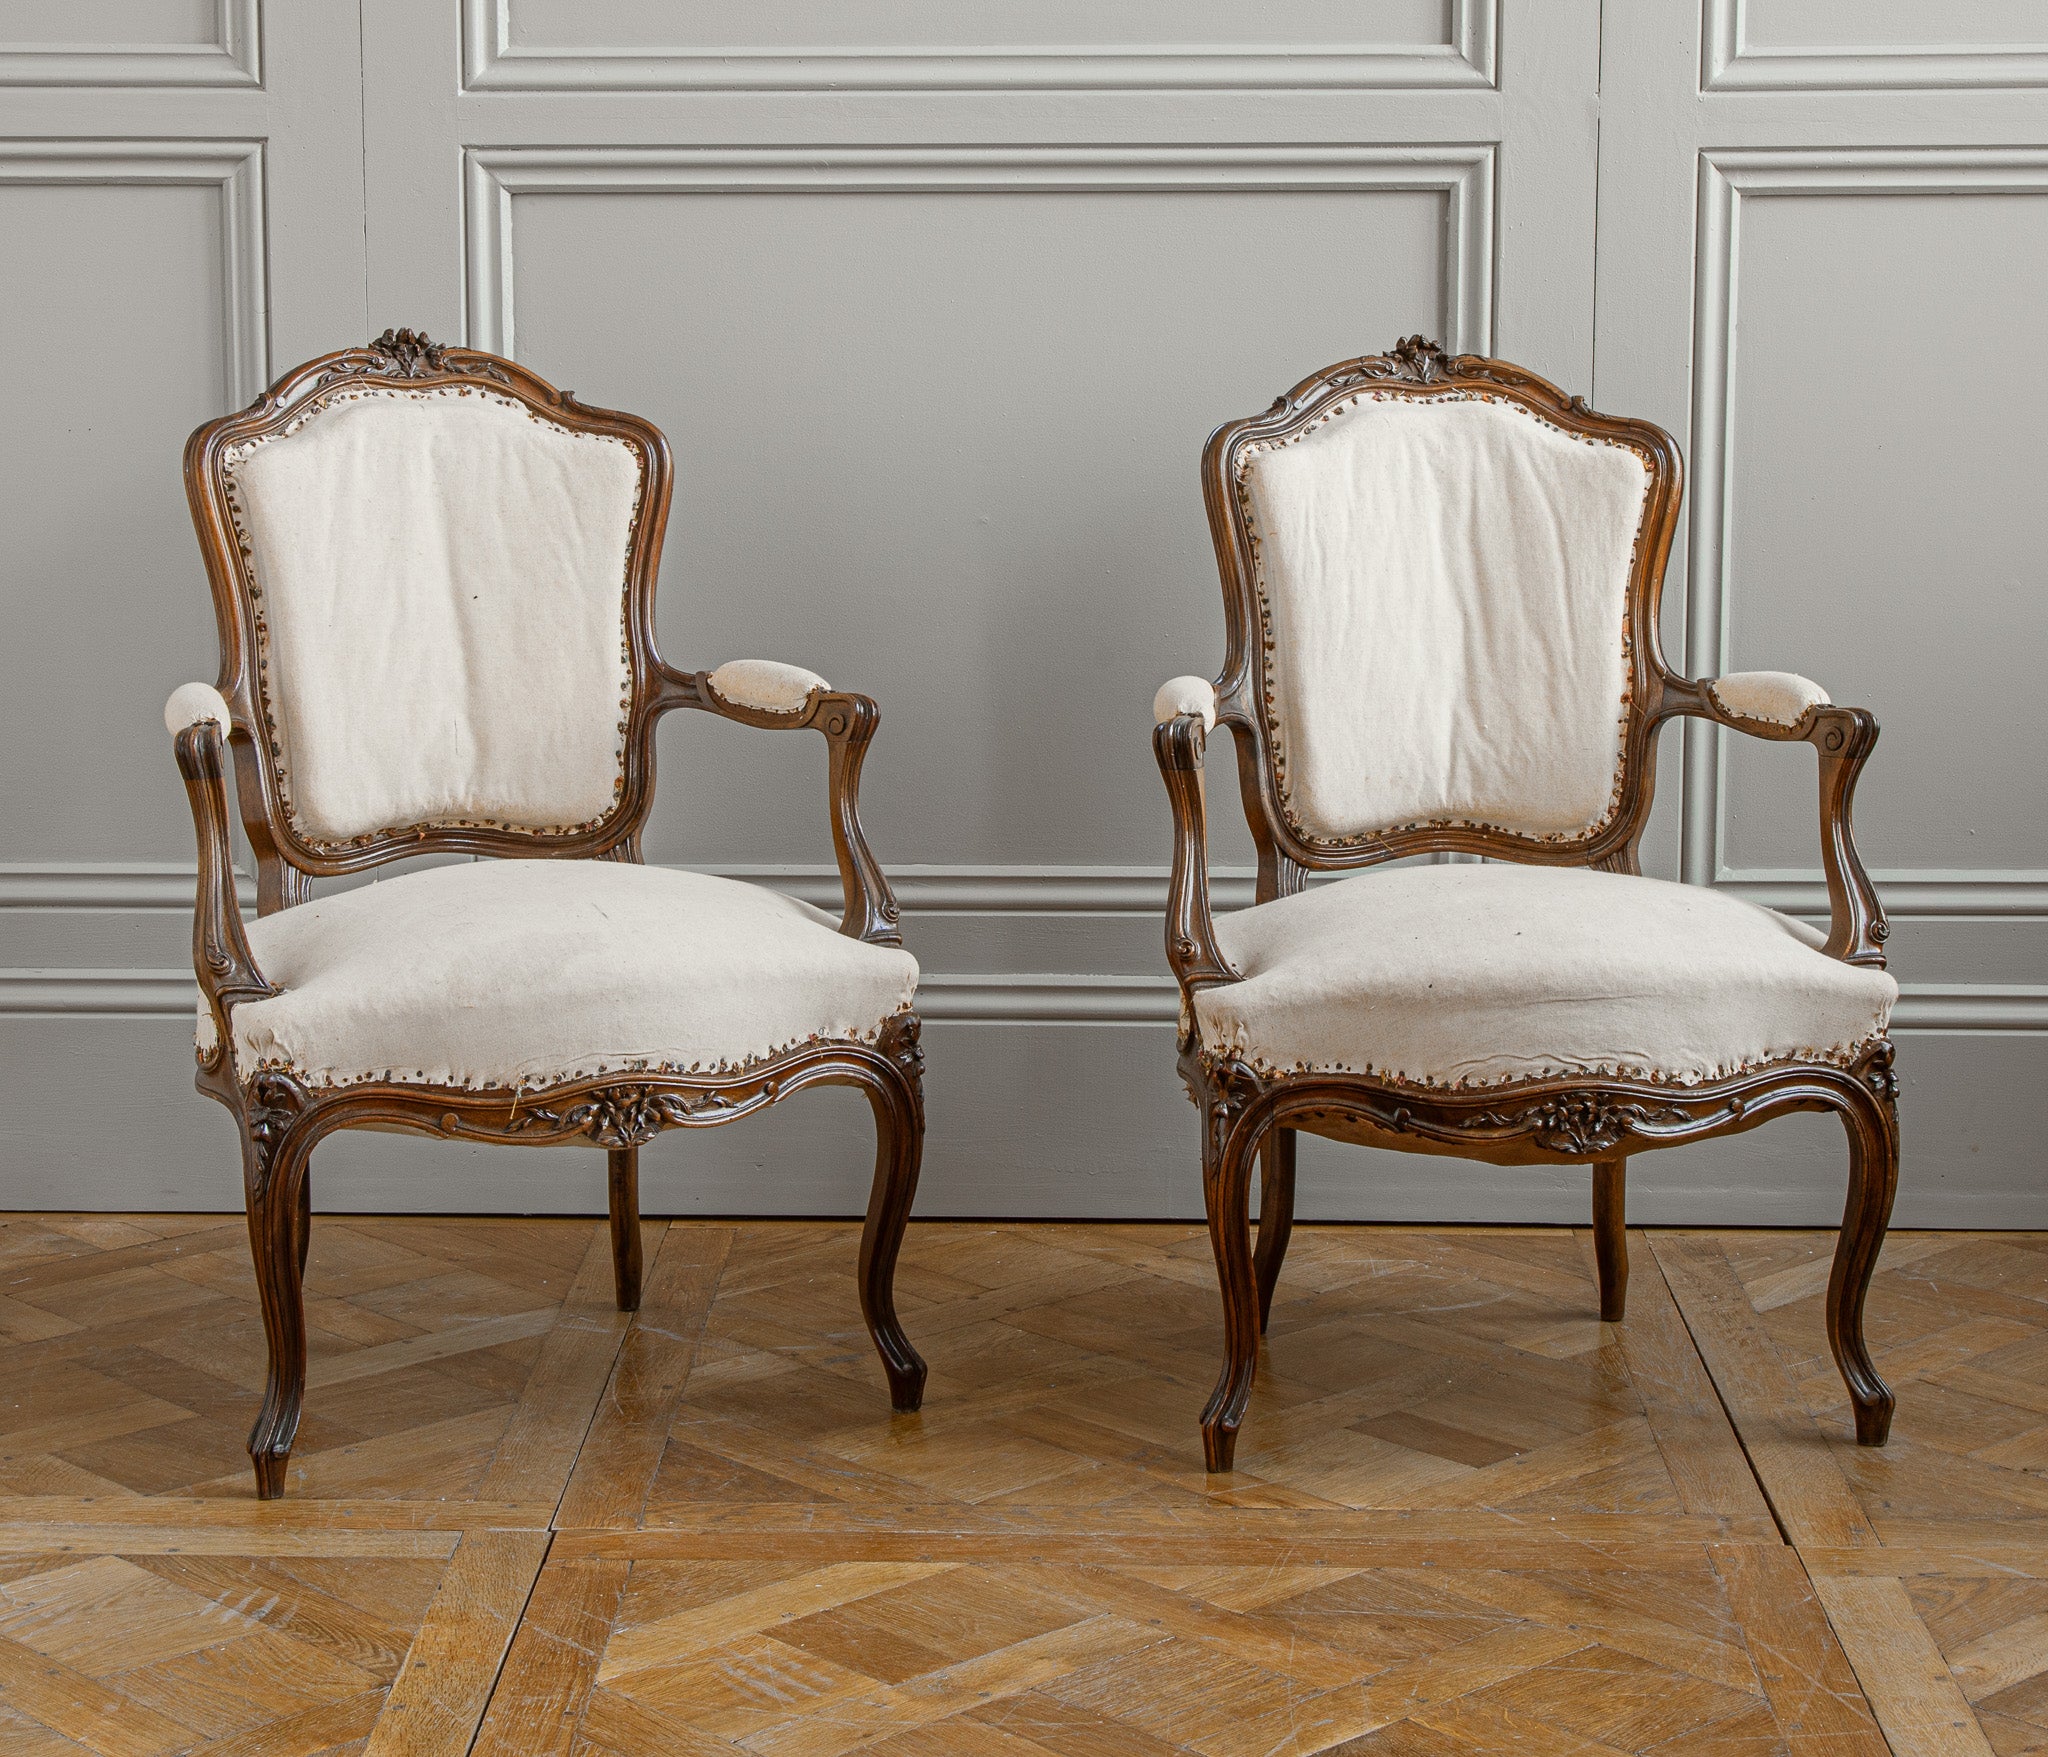 Ein Paar handgeschnitzte Sessel aus massivem Nussbaumholz im Louis XV-Stil, circa Anfang 1900, aus Frankreich.
Die Stühle haben einige schöne Details in der feinen Schnitzerei auf den Stühlen, die kleine Blumen darstellen. 
Auf Wunsch bieten wir